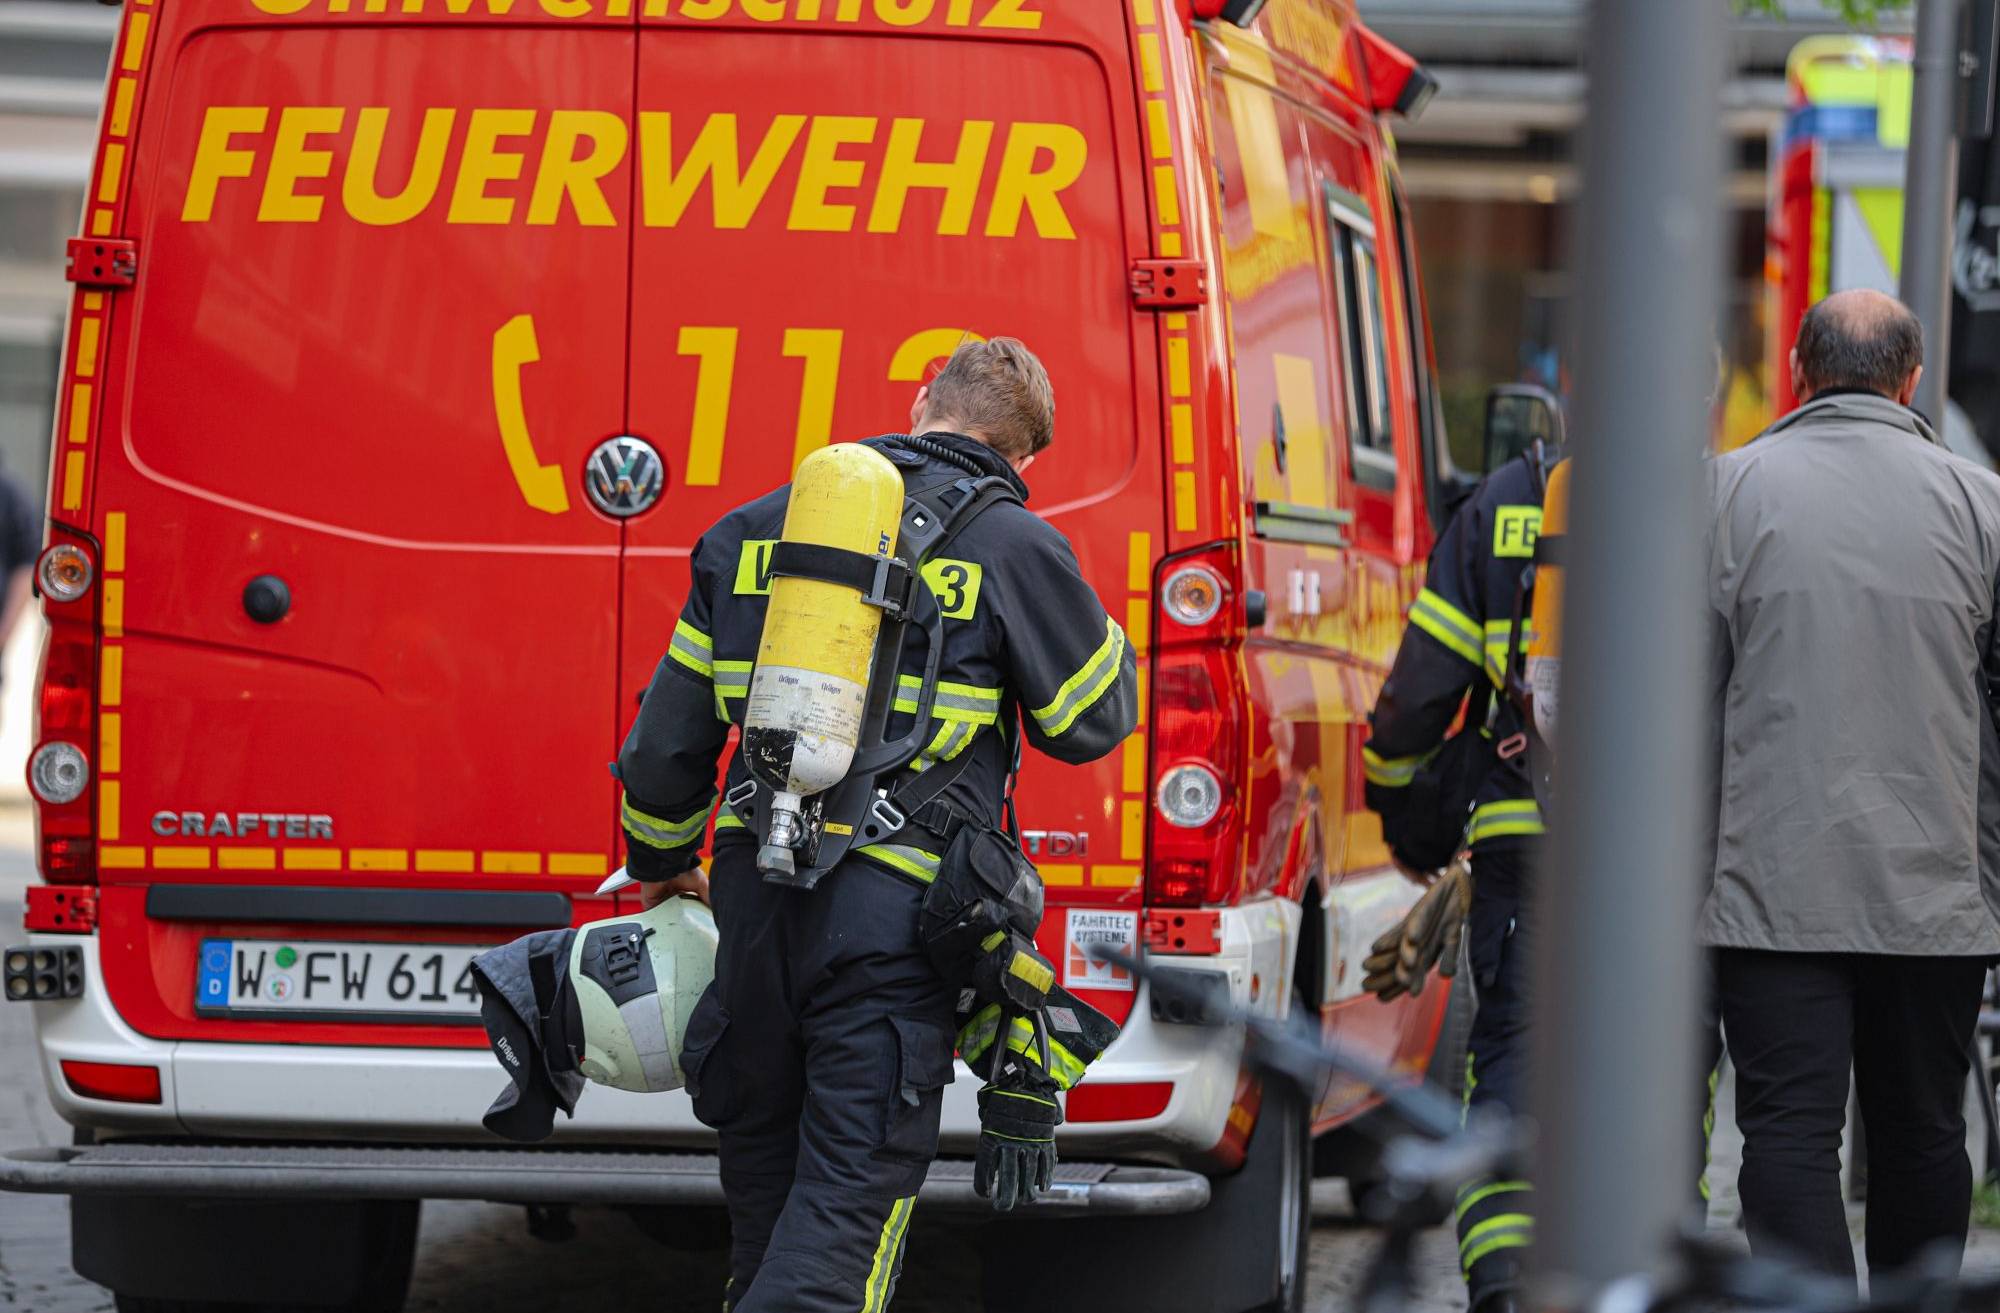 Häuser nach Gasaustritt in Wuppertal-Elberfeld evakuiert